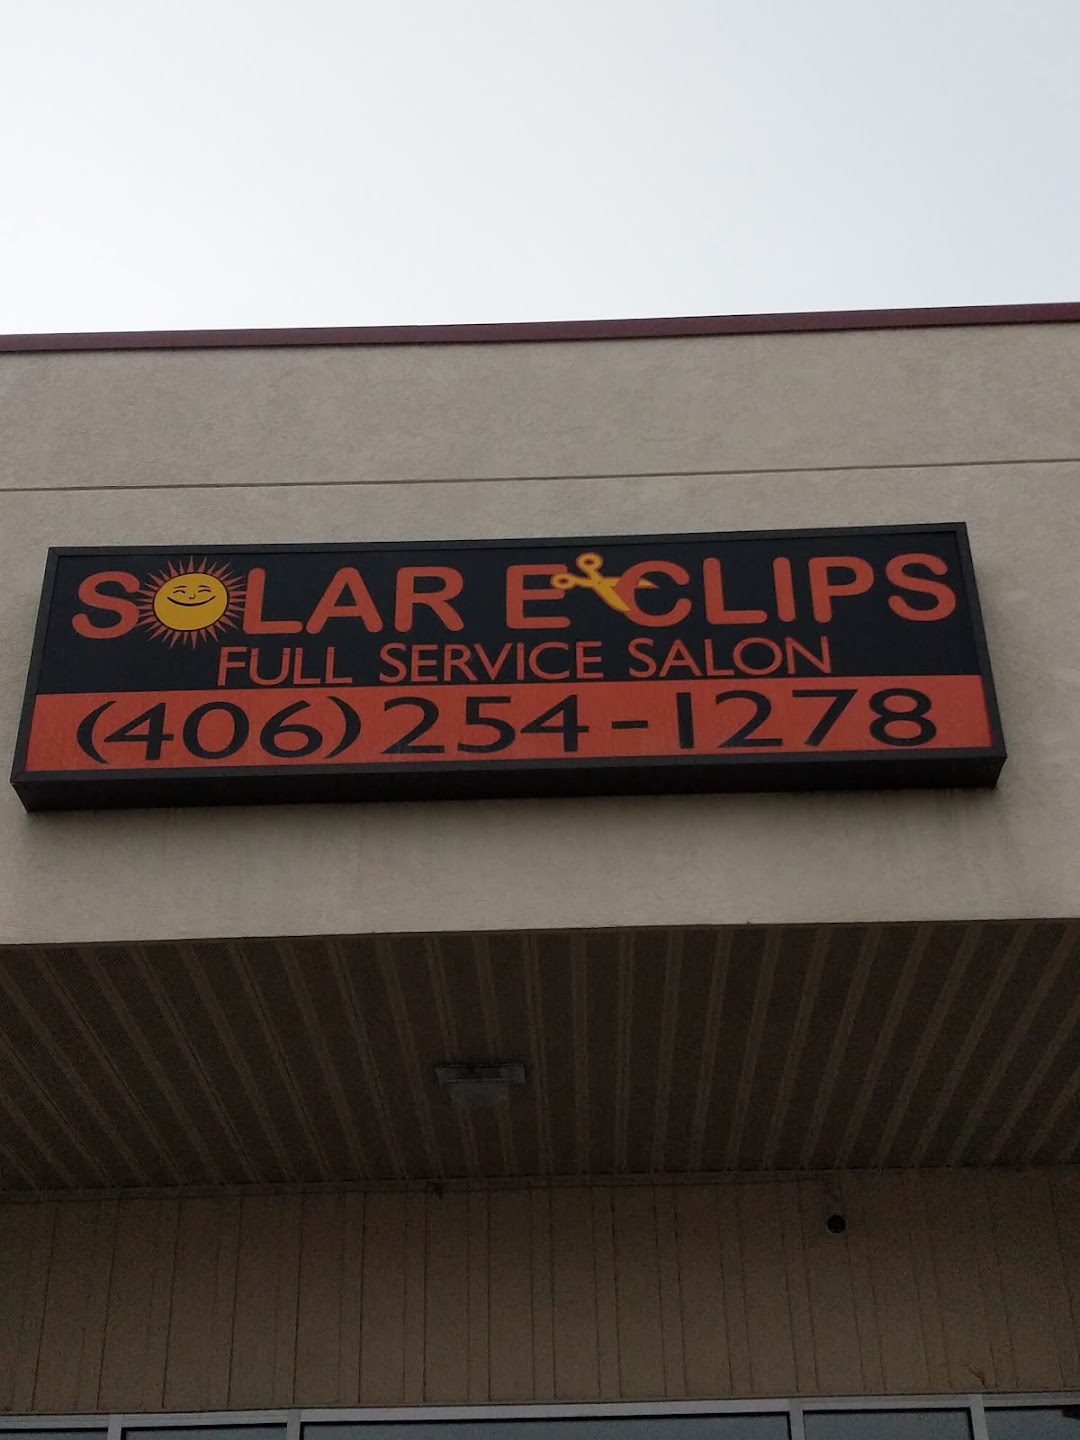 Solar E Clips